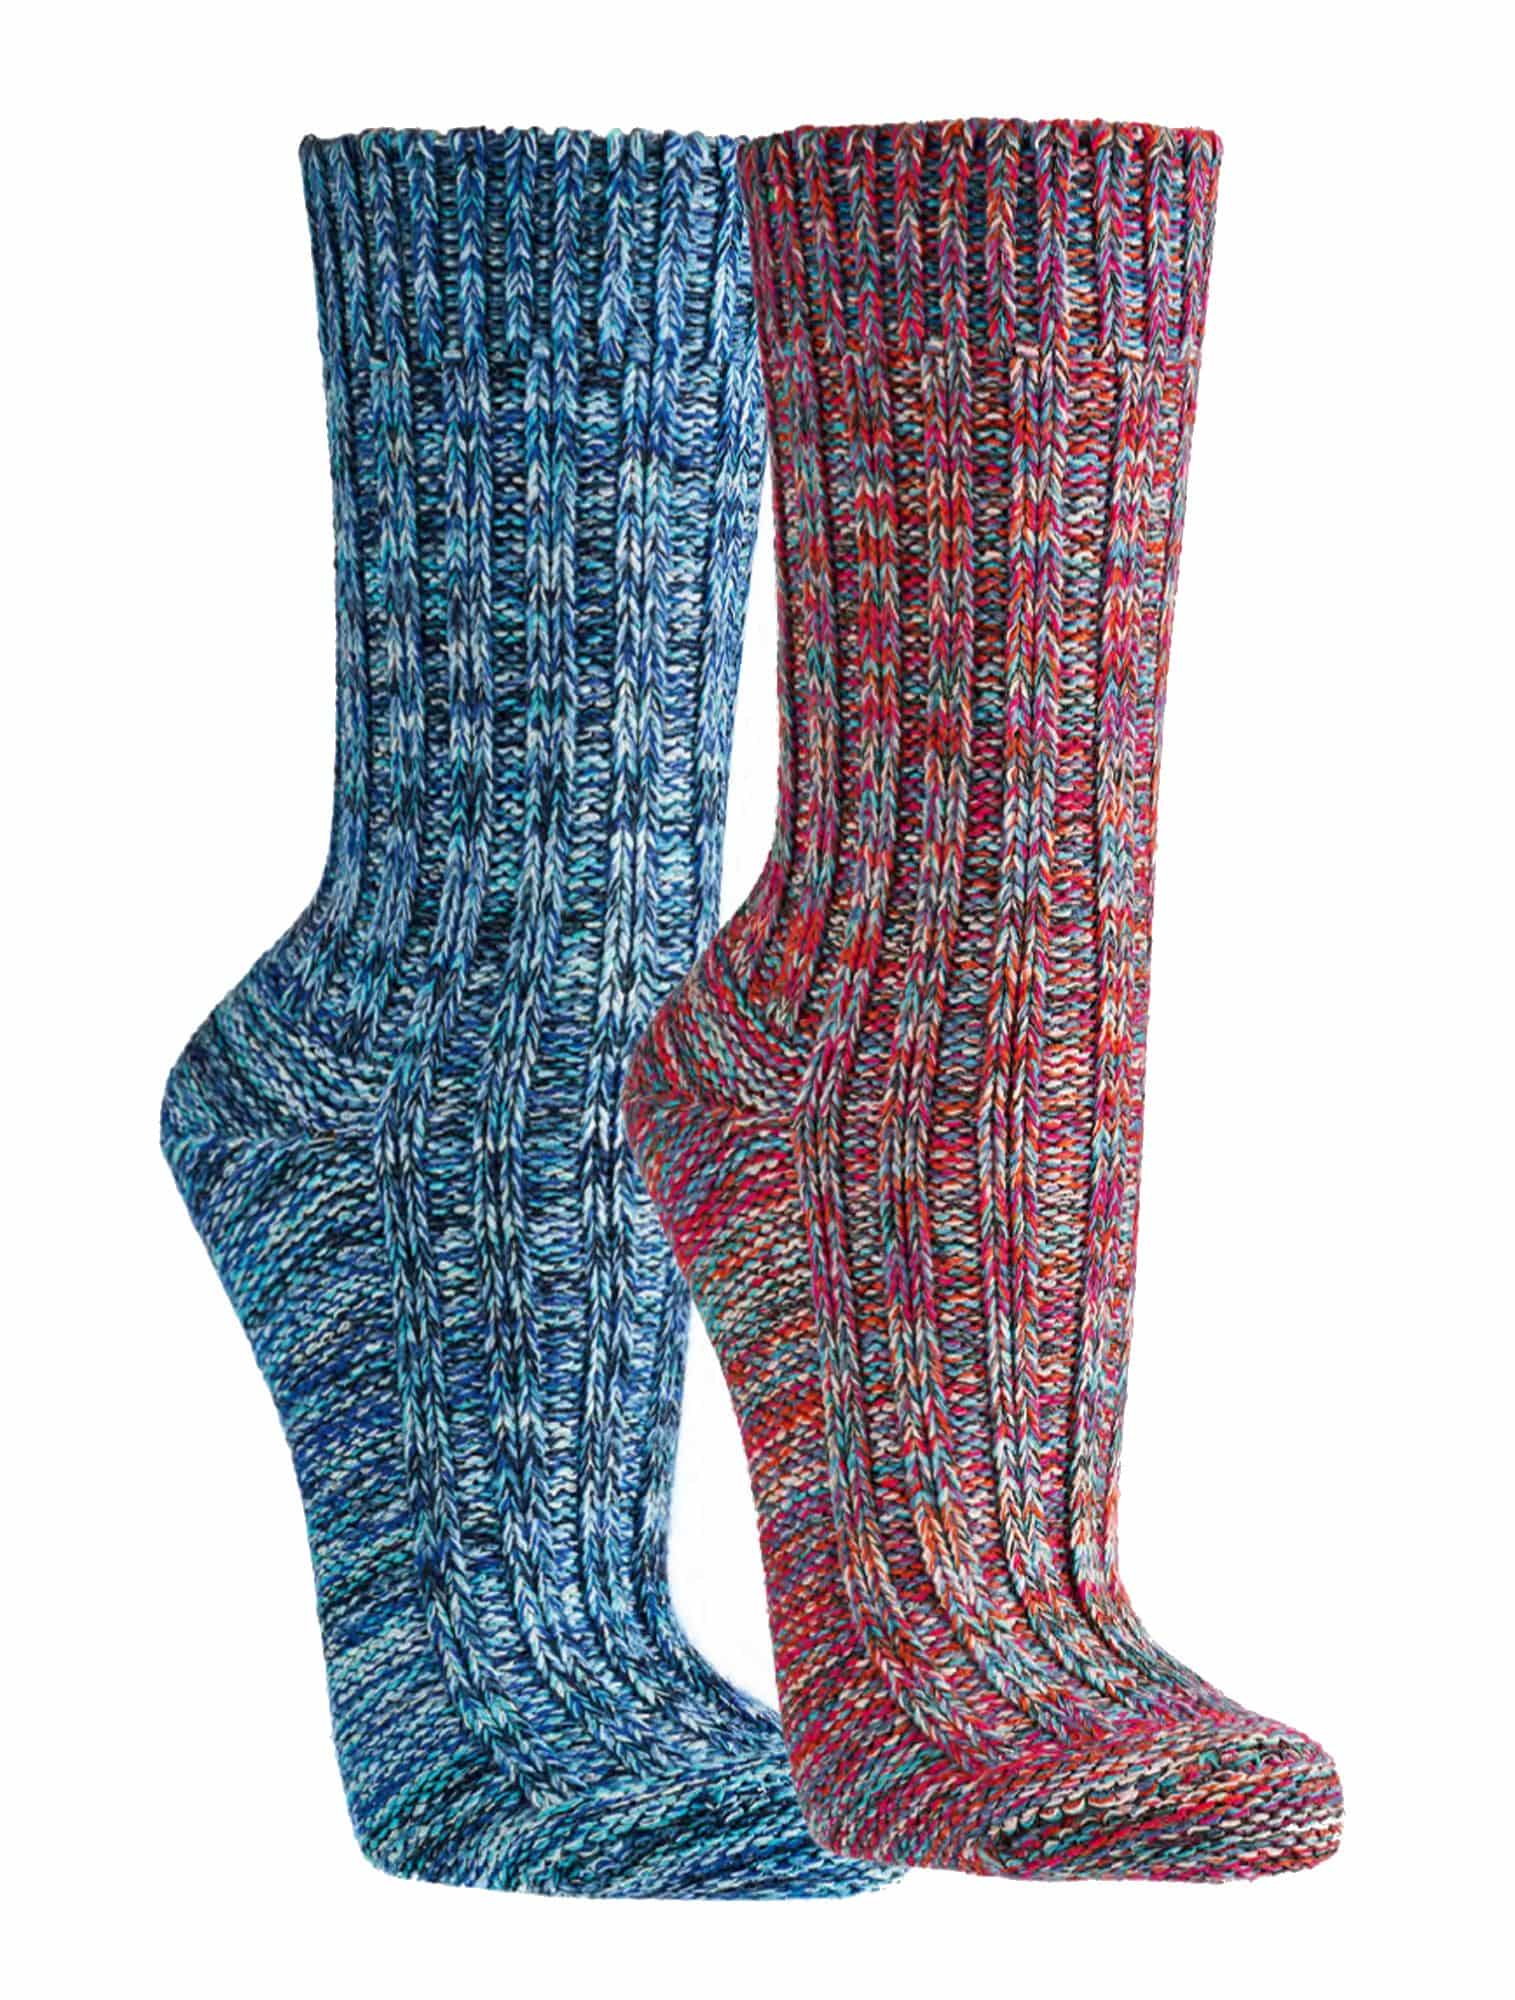 DAMEN & HERREN Multi Colour-Baumwoll-Socken  für Teenager, Damen und Herren schöne dicke Ware   3 Paar